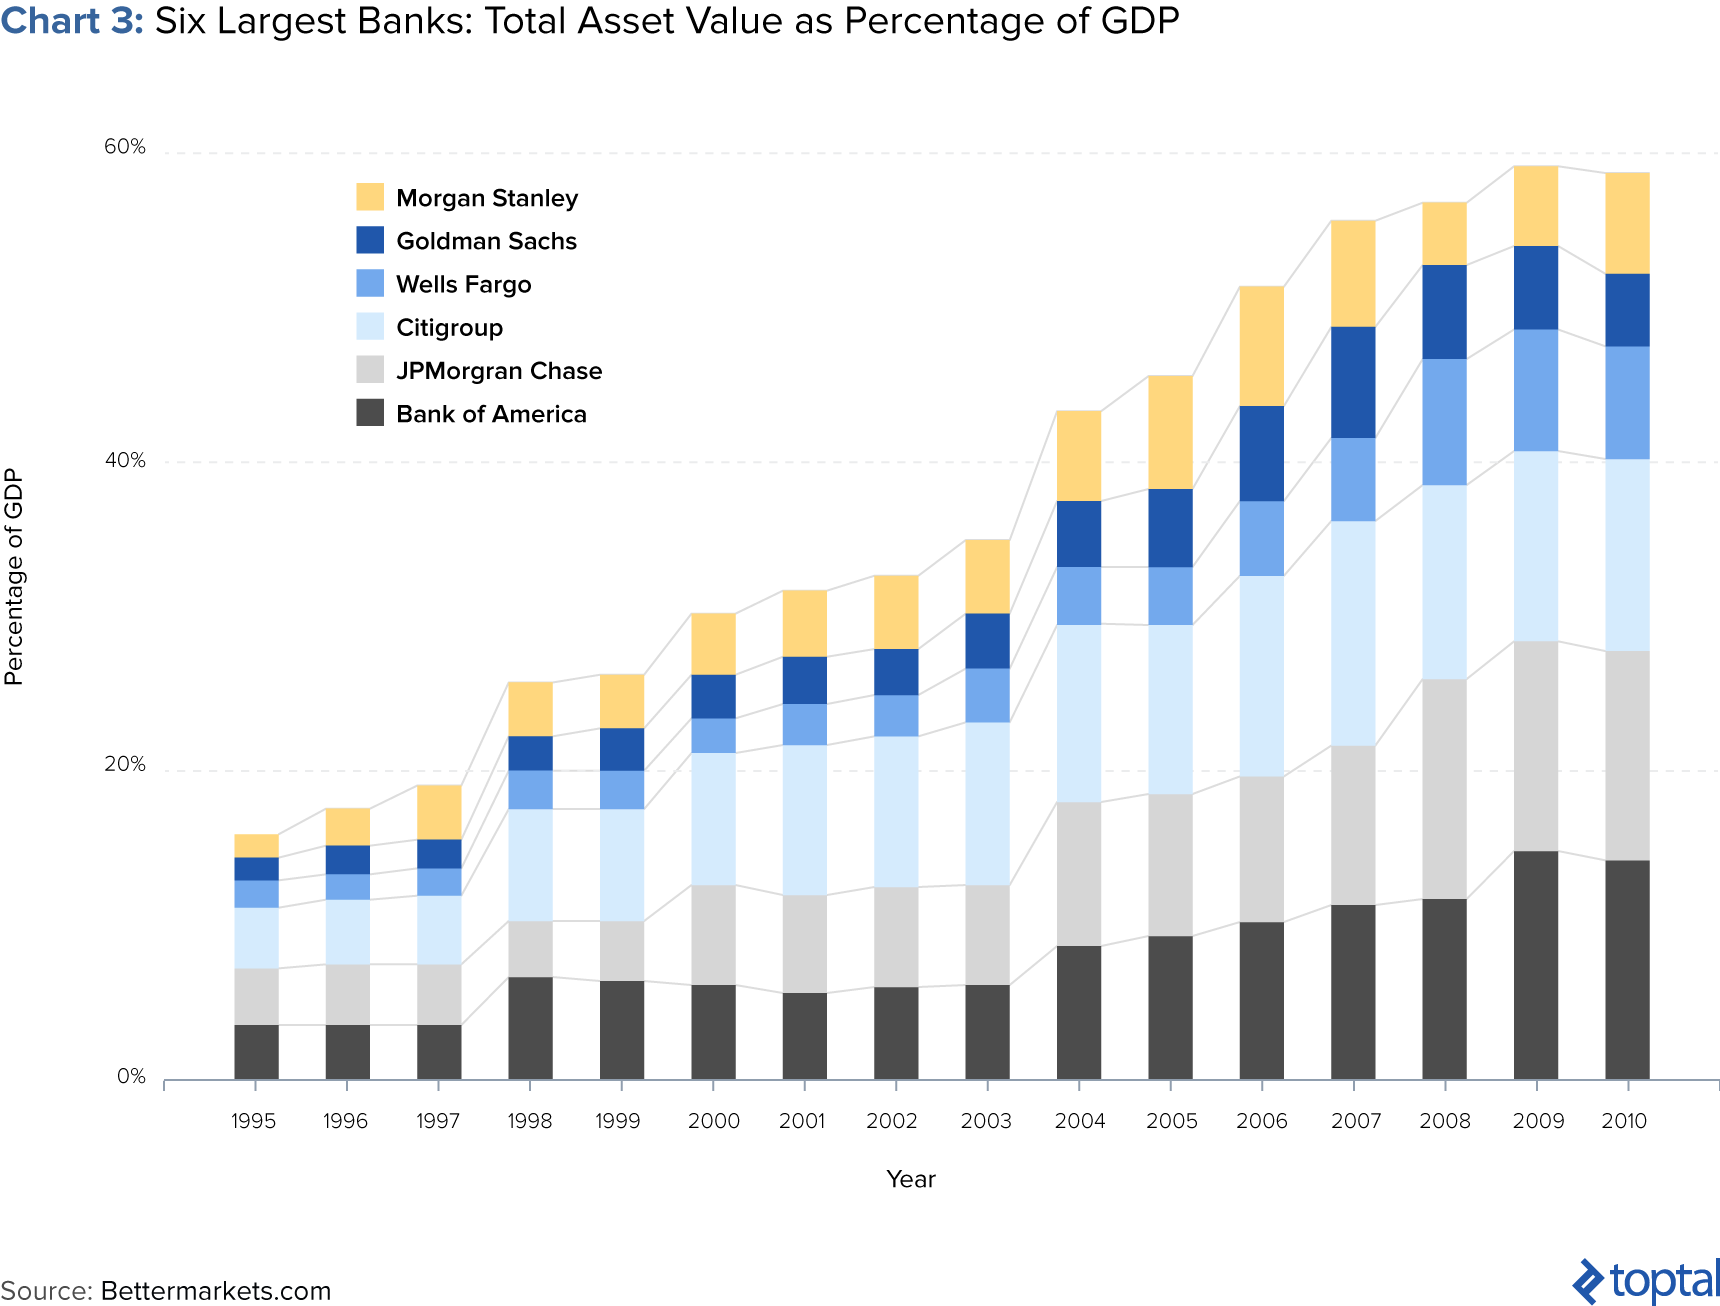 Gráfico 3: Los seis bancos más grandes: Valor total del activo como porcentaje del PIB